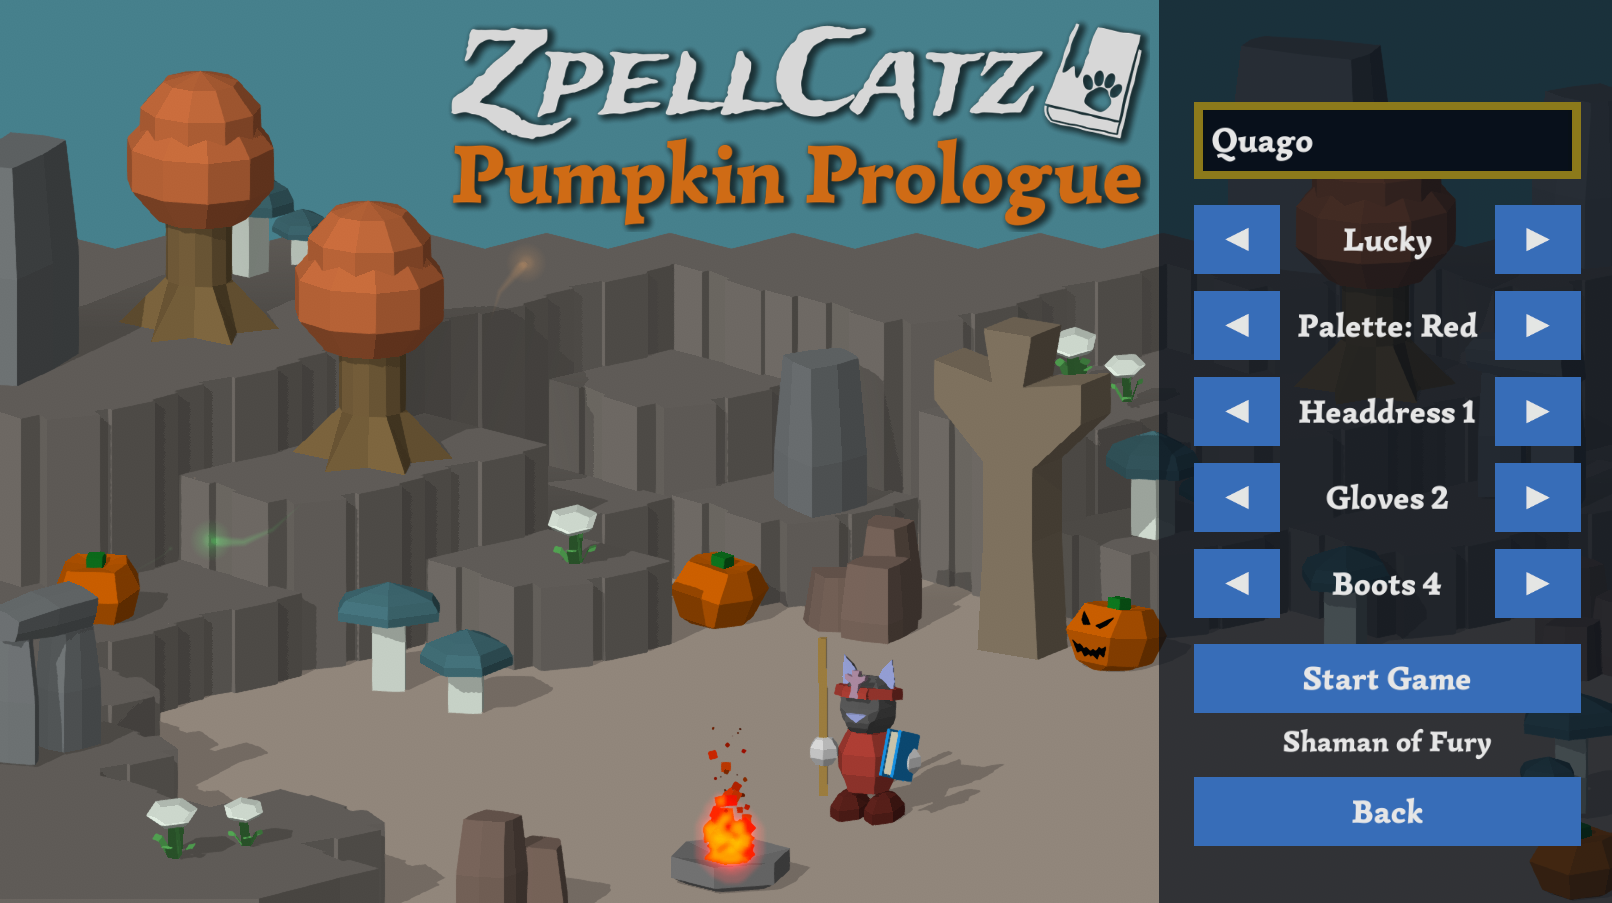 pumpkin prologue 0.93.0 title